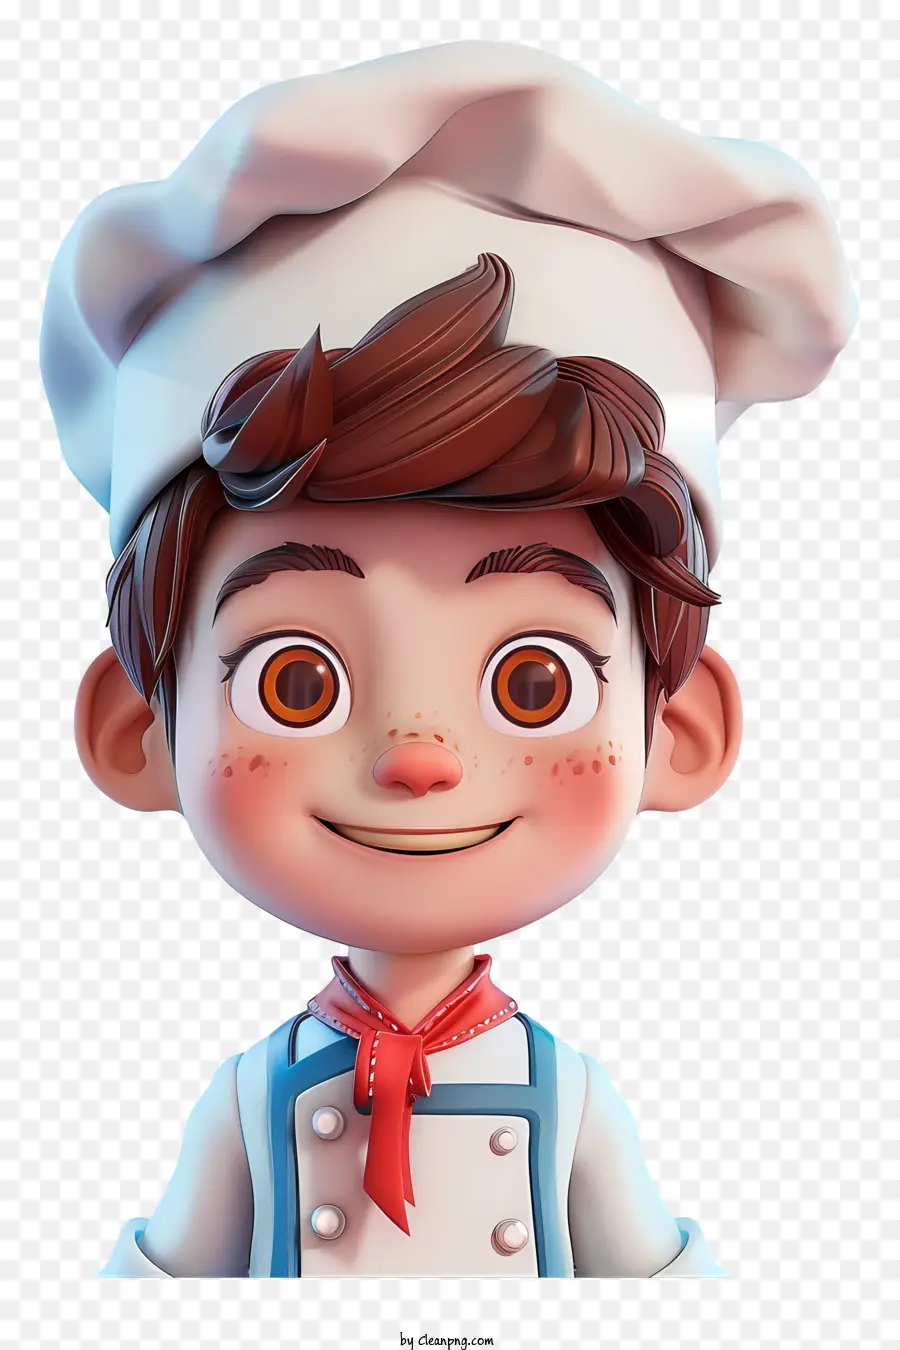 Cartoon Chef Child Chef Baking Paking Apron's Cappello dello chef - Bambino da bambino in cucina commerciale